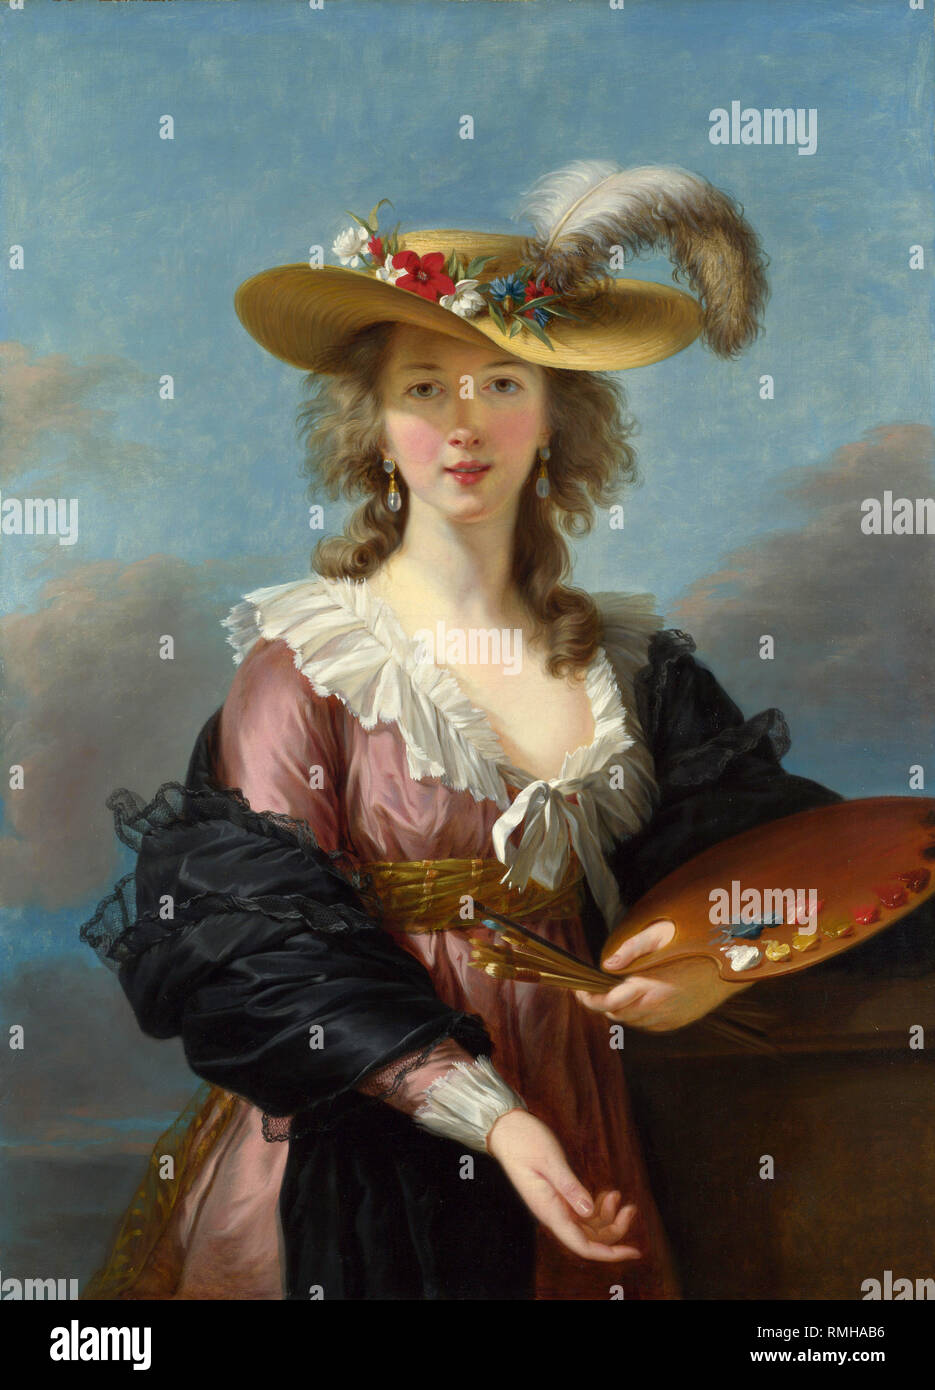 Louise élisabeth Vigée Le Brun (1755 - 1842), als Madame Lebrun oder Madame Le Brun, Französisch Portrait Maler des späten achtzehnten Jahrhunderts bekannt. Portrait of a Straw Hat Stockfoto